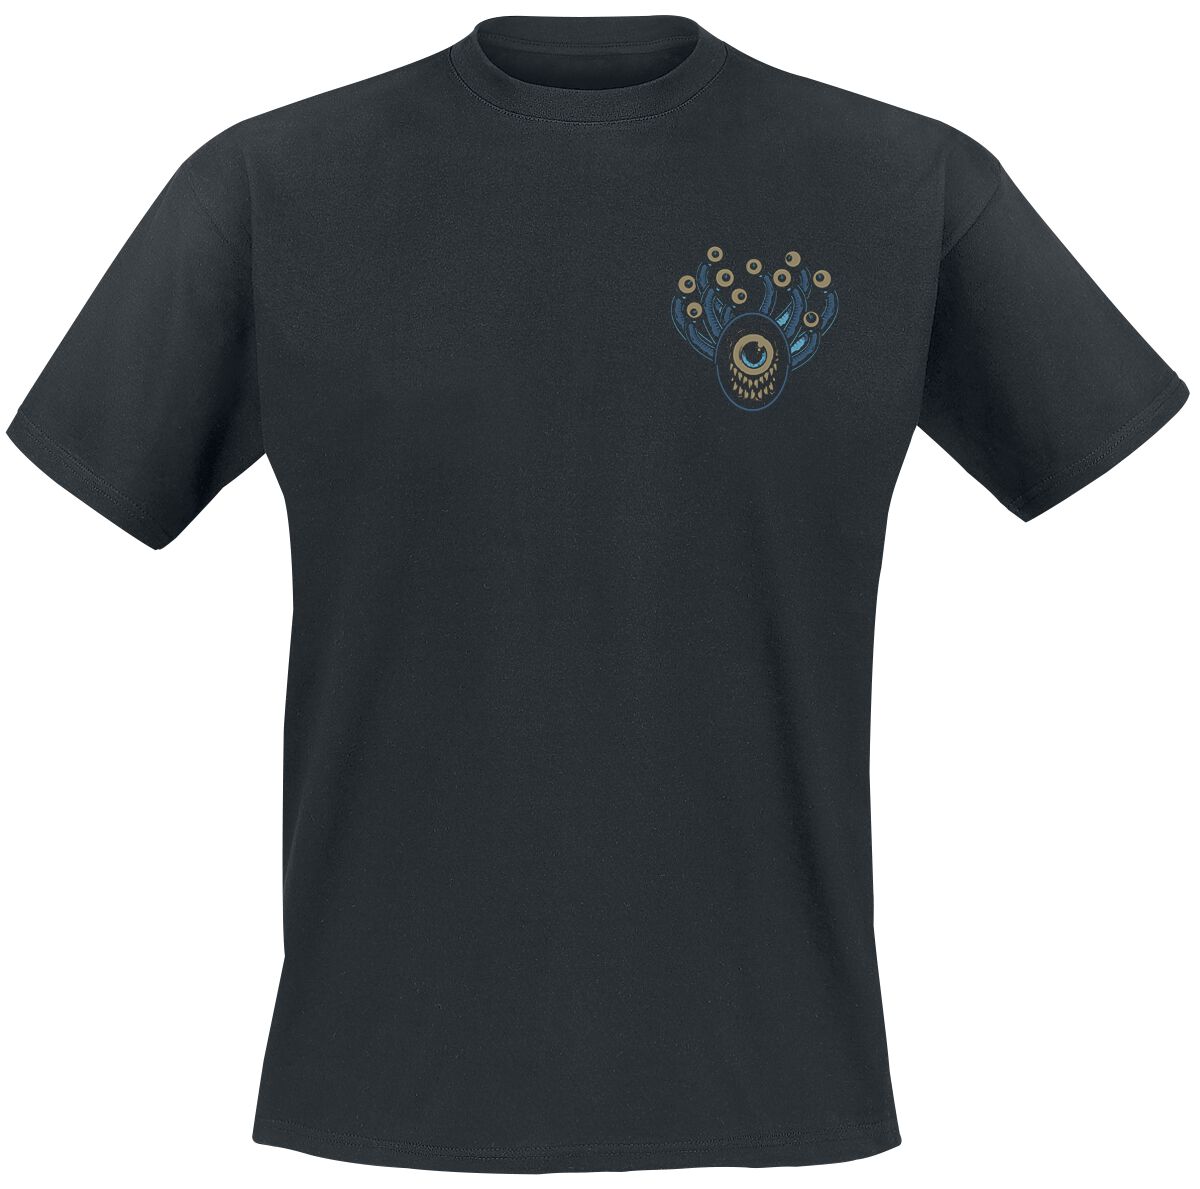 Dungeons and Dragons - Gaming T-Shirt - Hydro74 - Beholder - S bis XXL - für Männer - Größe XXL - schwarz  - EMP exklusives Merchandise!